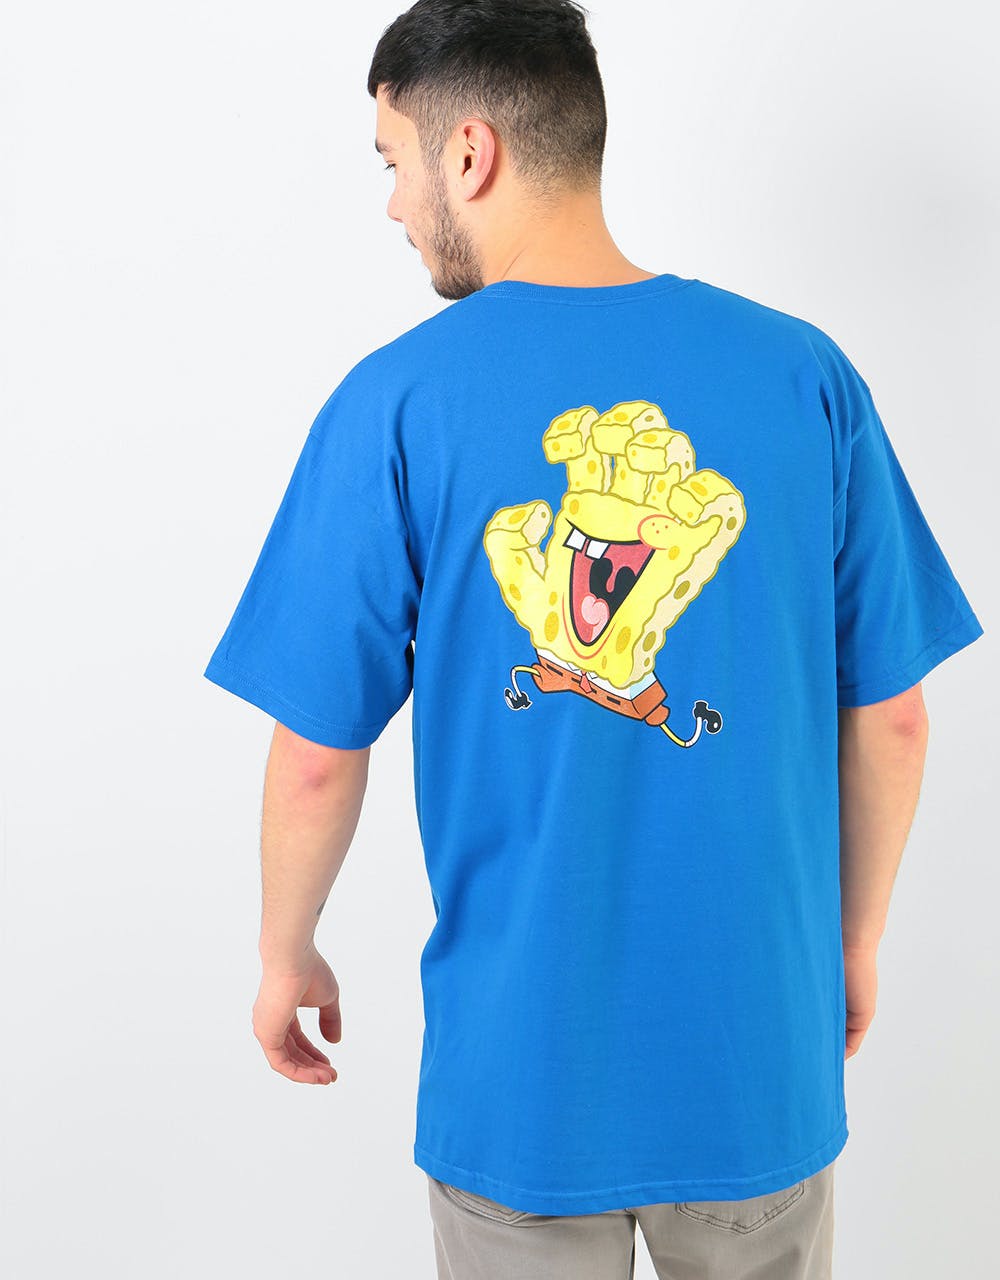 Santa Cruz x SpongeBob Hand T-Shirt - Royal